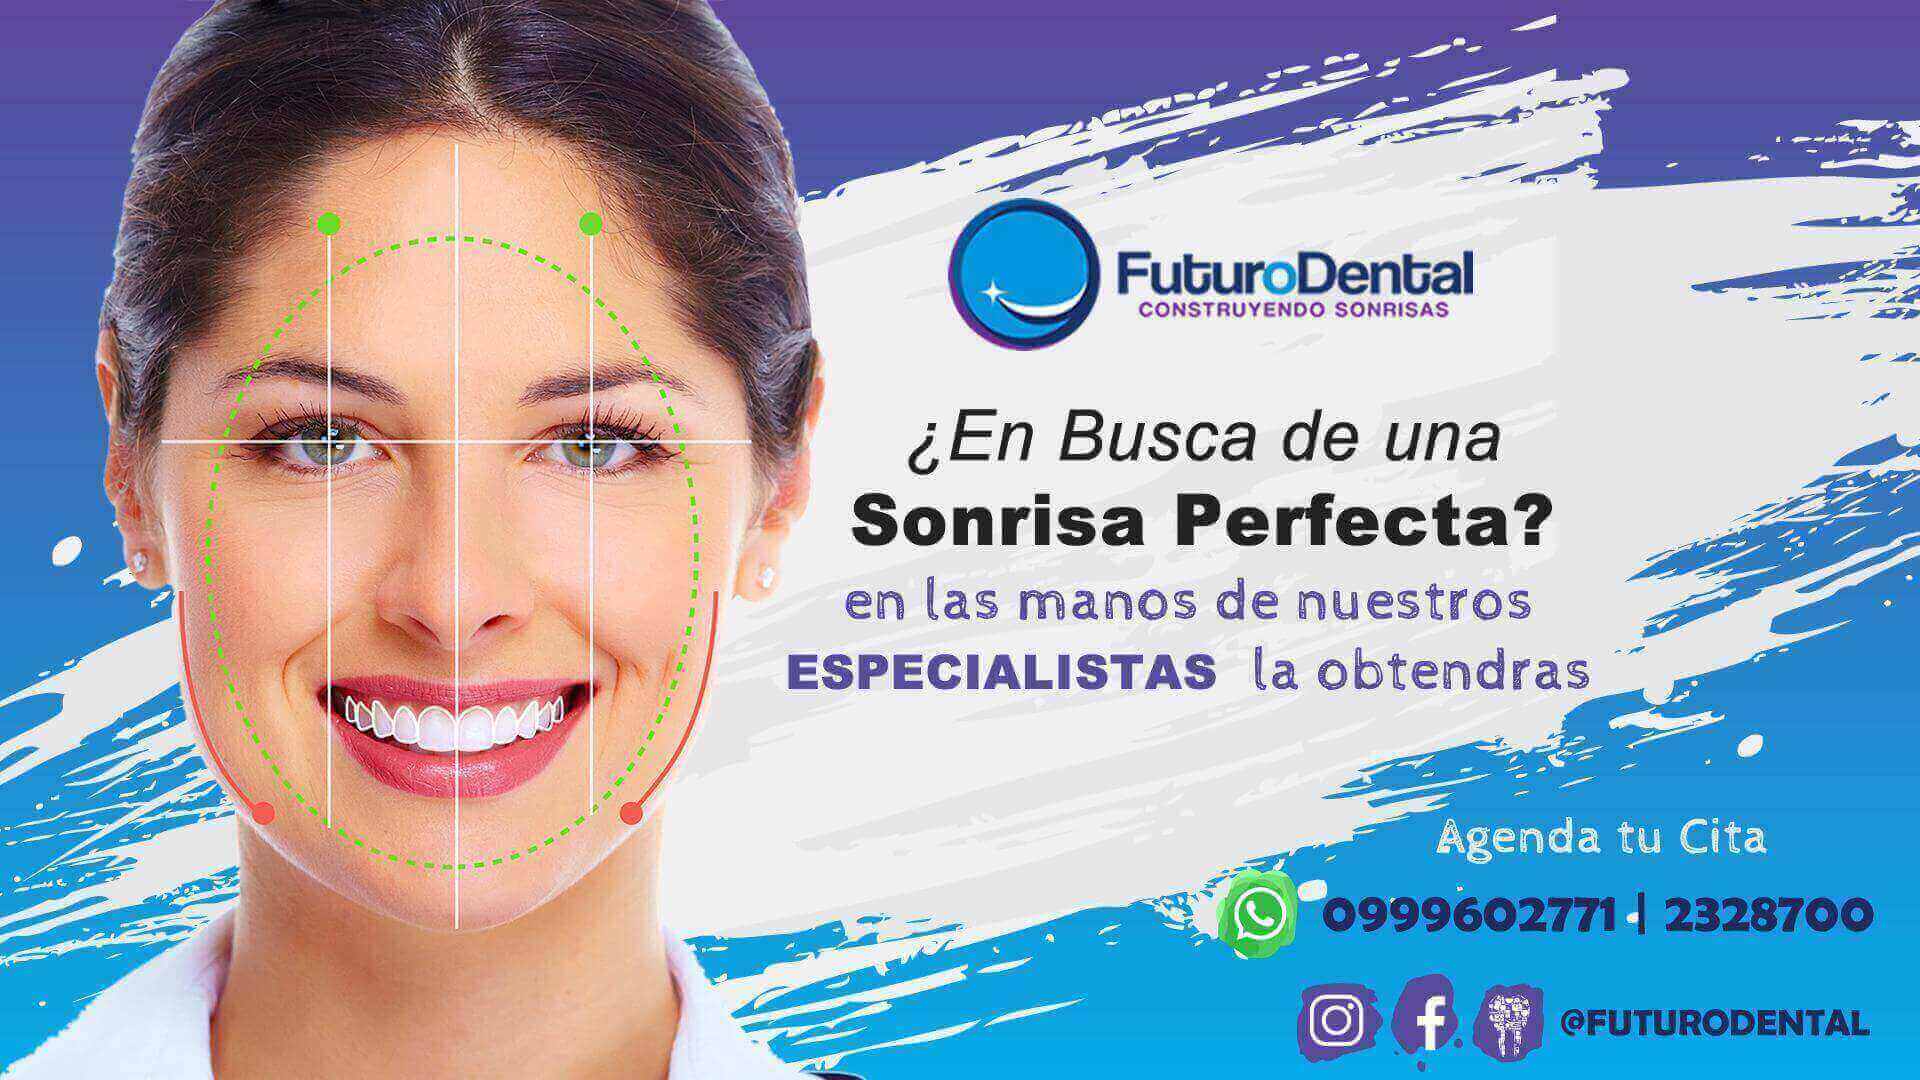 En Futuro Dental ✅ estamos preparados para construir tu sonrisa con procedimientos de última tecnología 😁